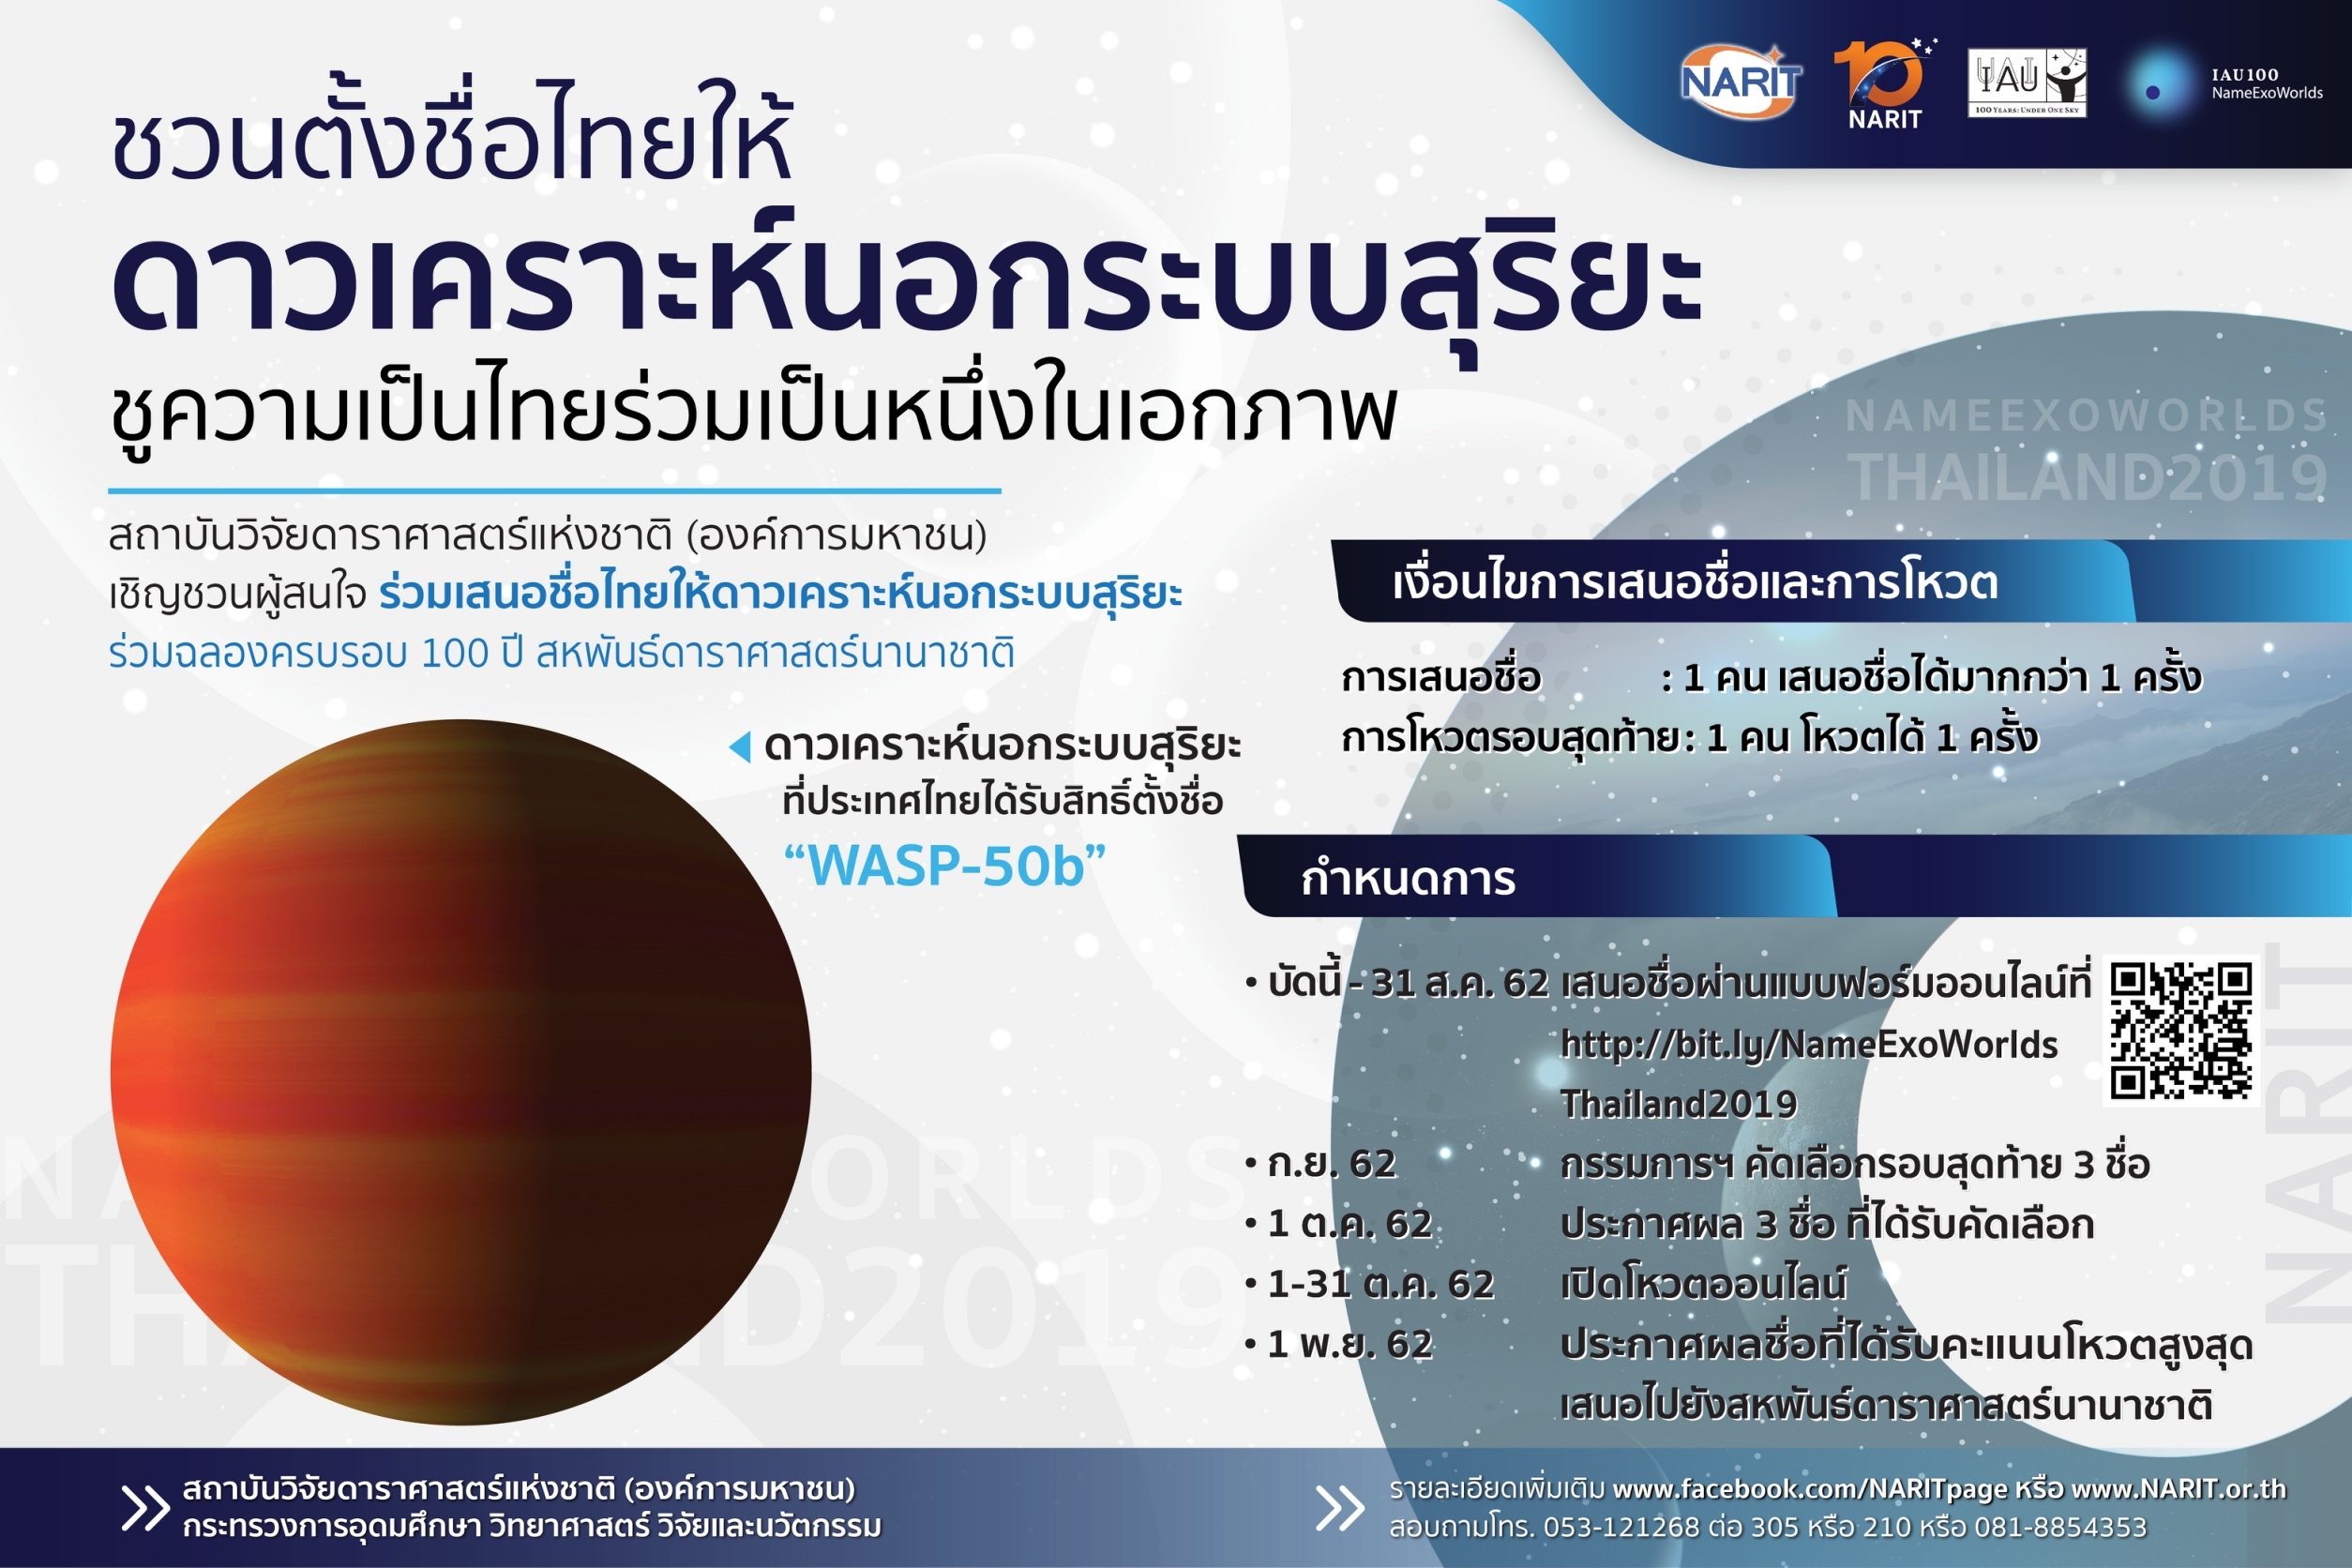 สดร. ชวน “ตั้งชื่อไทยให้ดาวเคราะห์นอกระบบสุริยะ” ชูความเป็นไทยร่วมเป็นหนึ่งในเอกภพ